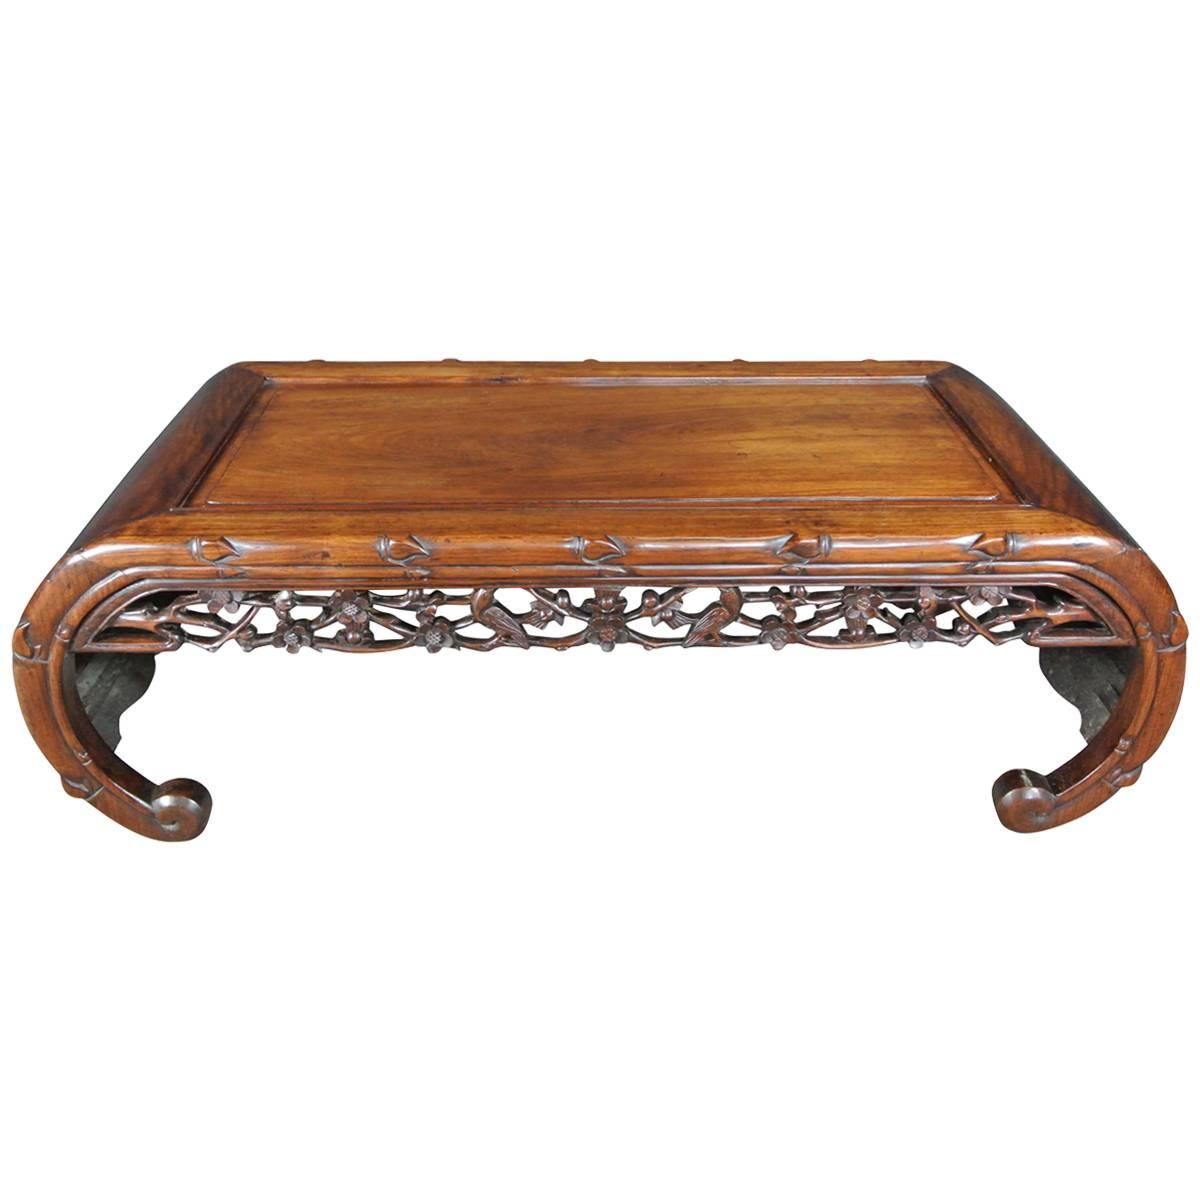 Antique Hardwood Opium Table